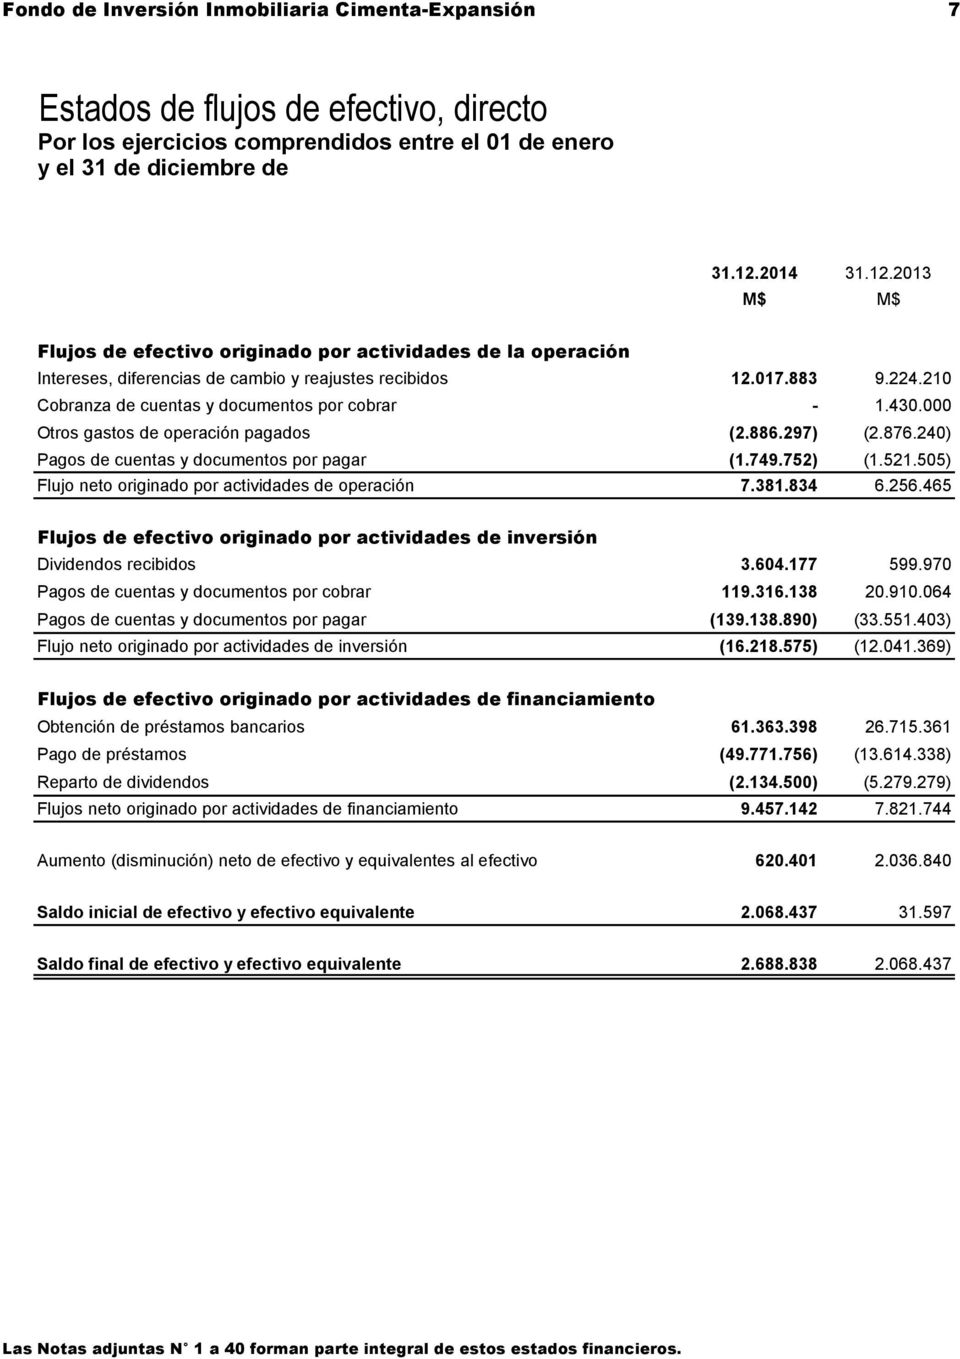 210 Cobranza de cuentas y documentos por cobrar - 1.430.000 Otros gastos de operación pagados (2.886.297) (2.876.240) Pagos de cuentas y documentos por pagar (1.749.752) (1.521.